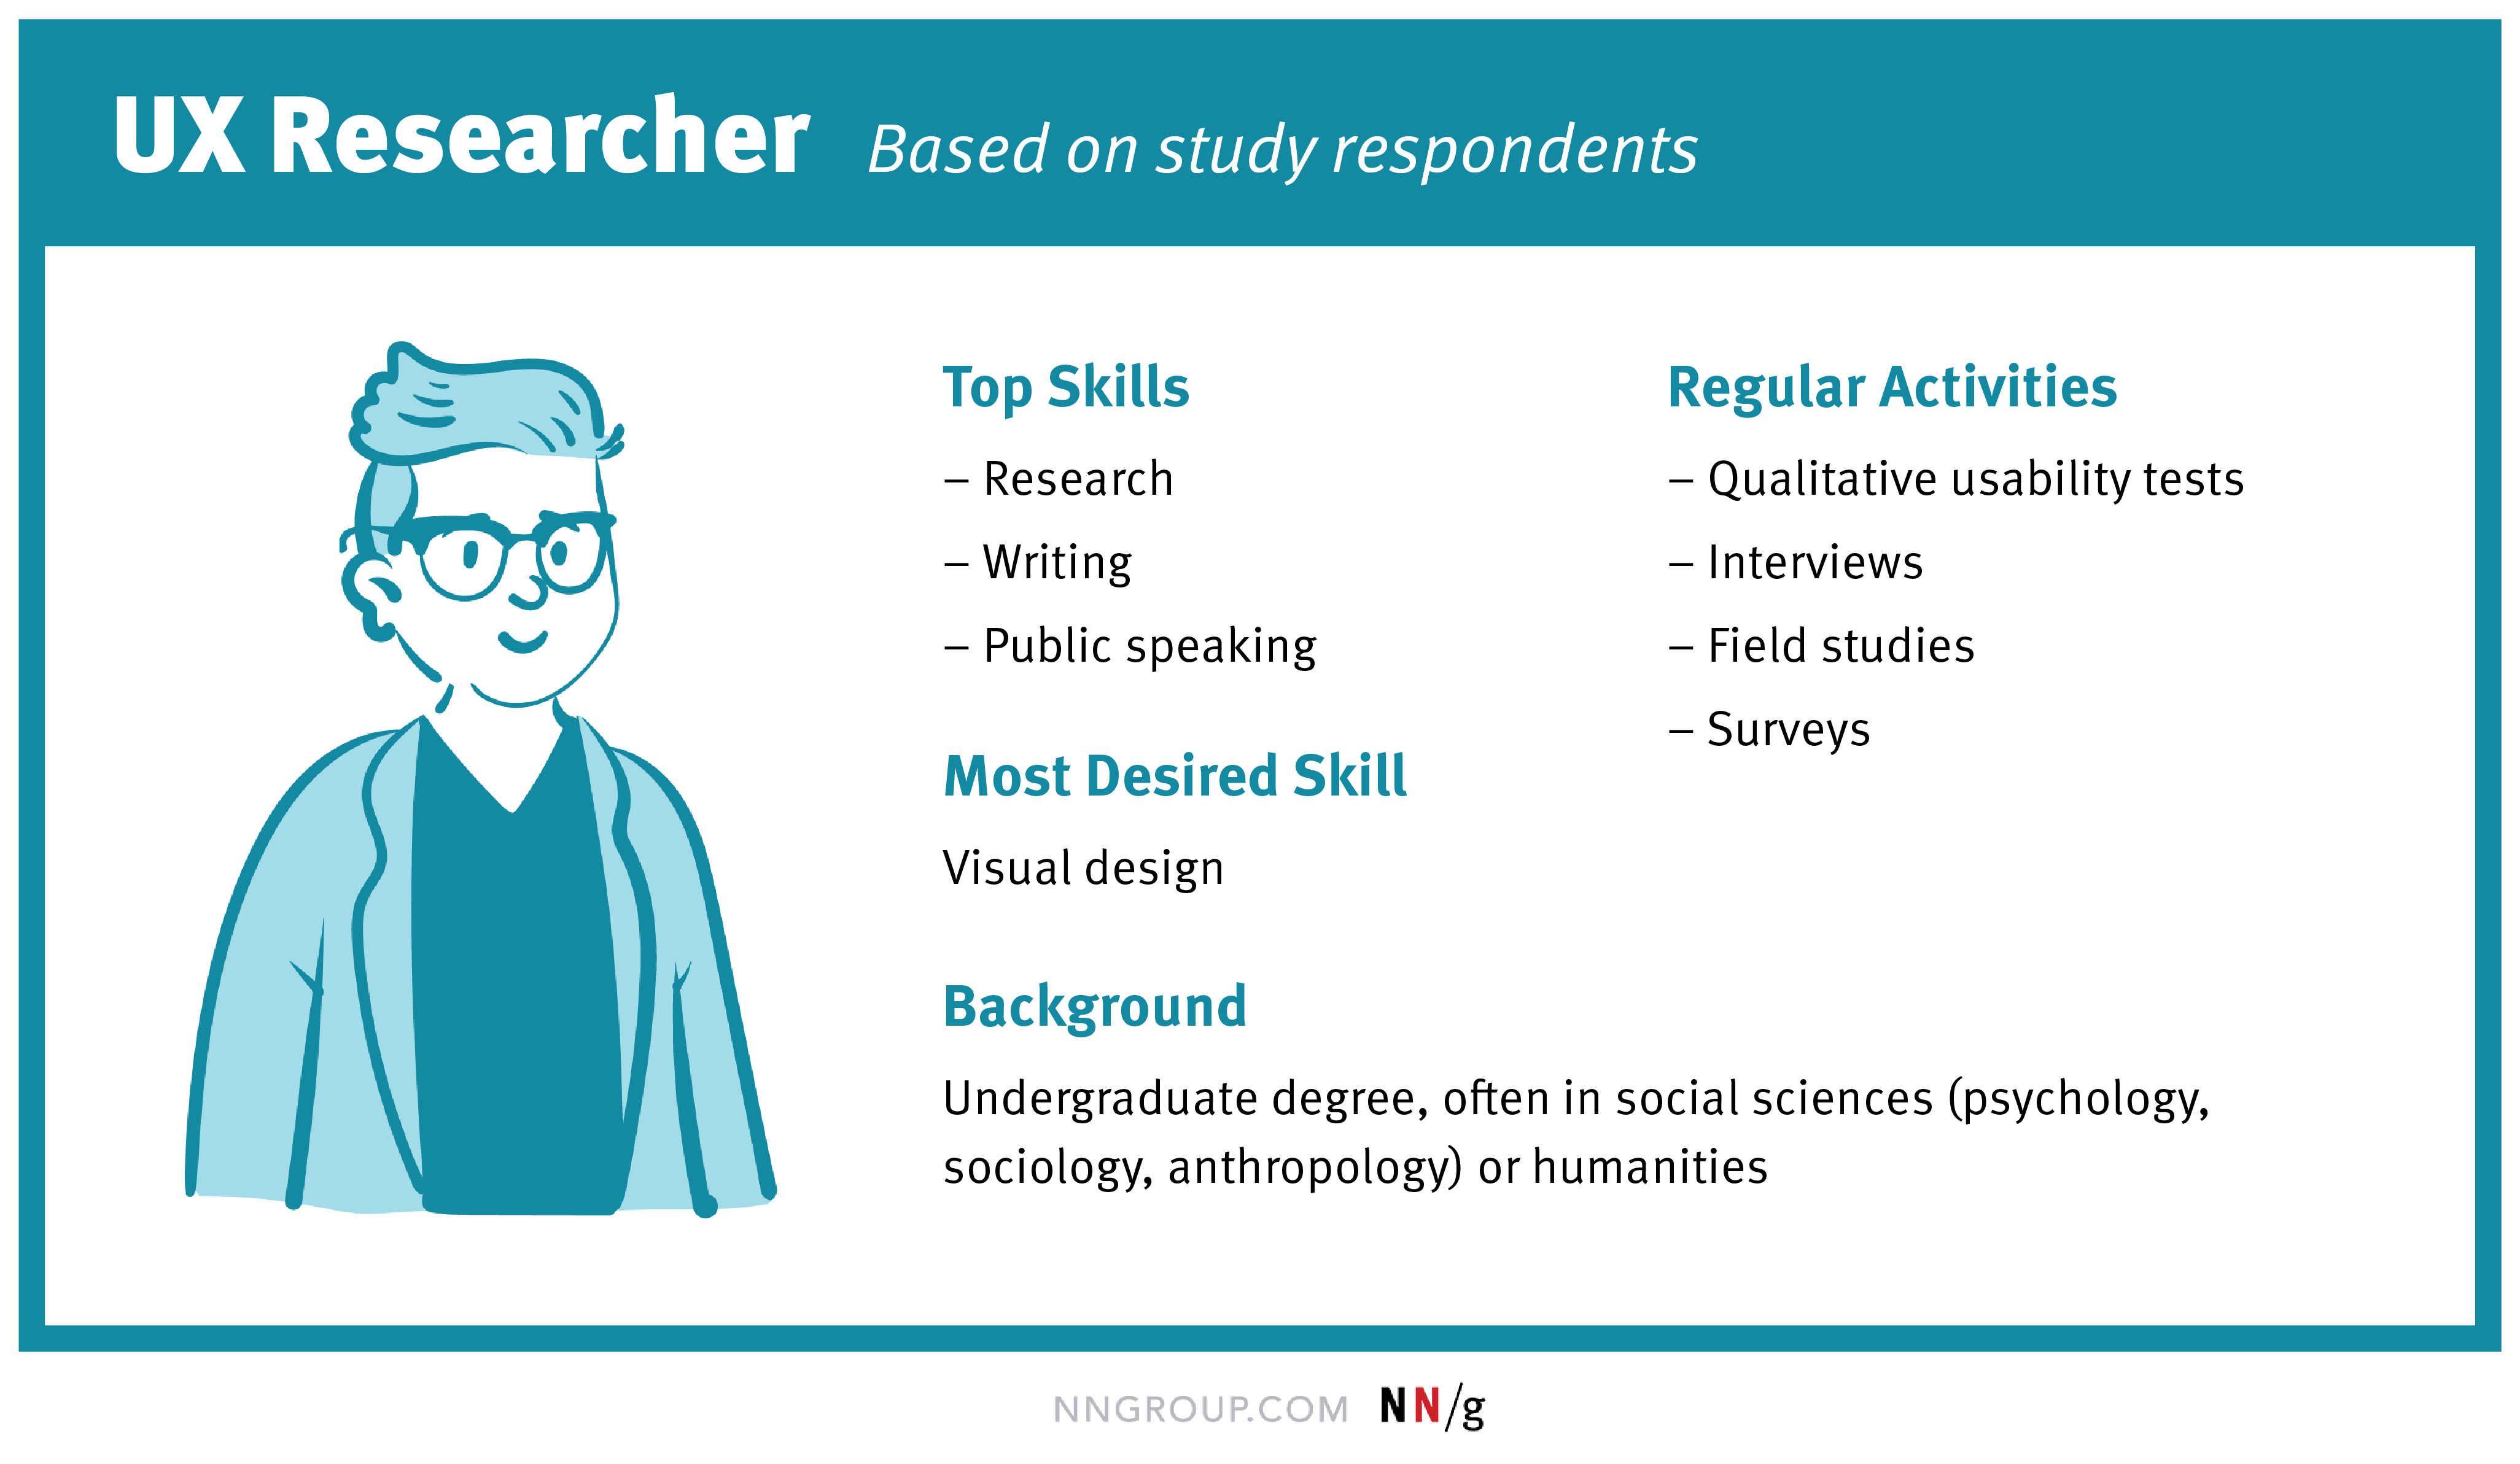 UX Researcher là vị trí công việc khá phát triển